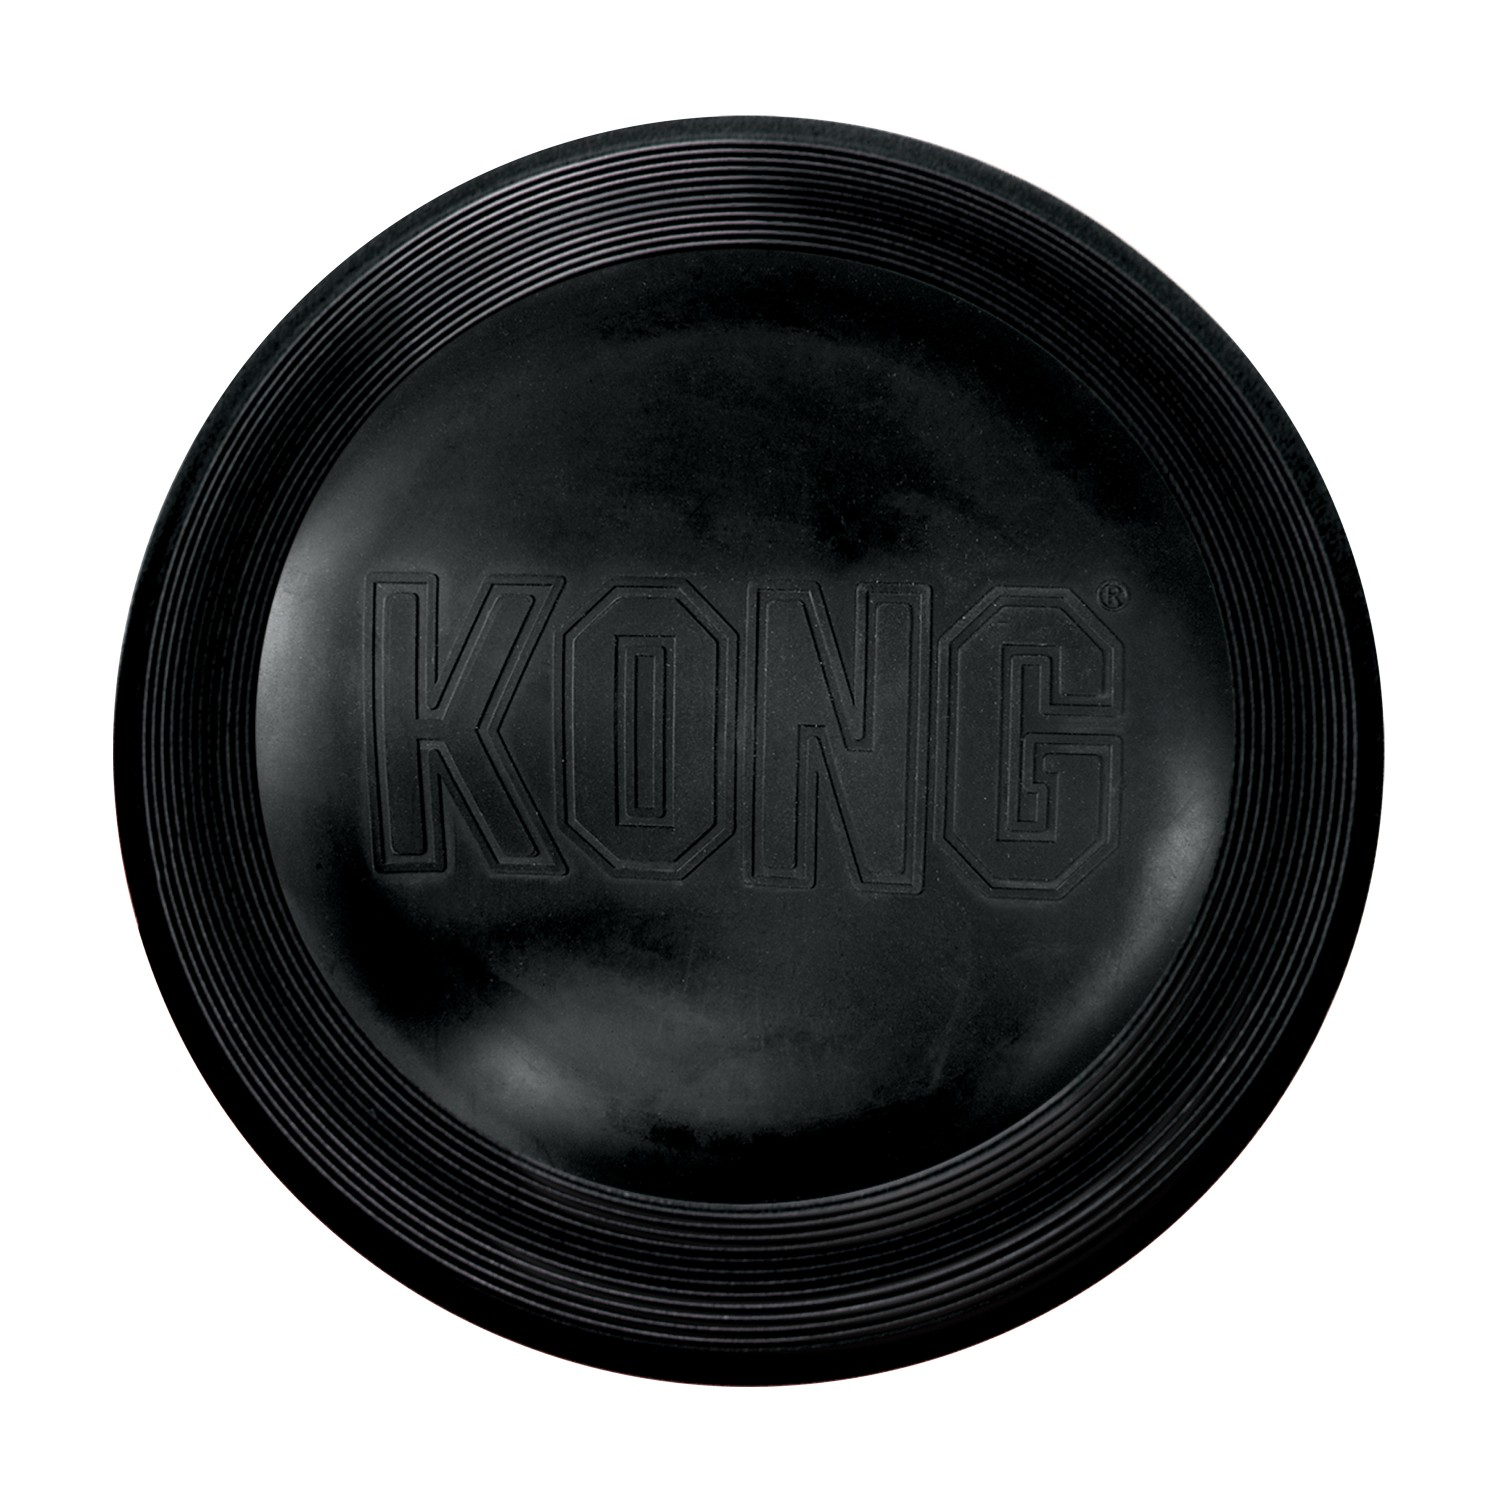 KONG cão Extreme Flyer - frisbee dobrável muito resistente